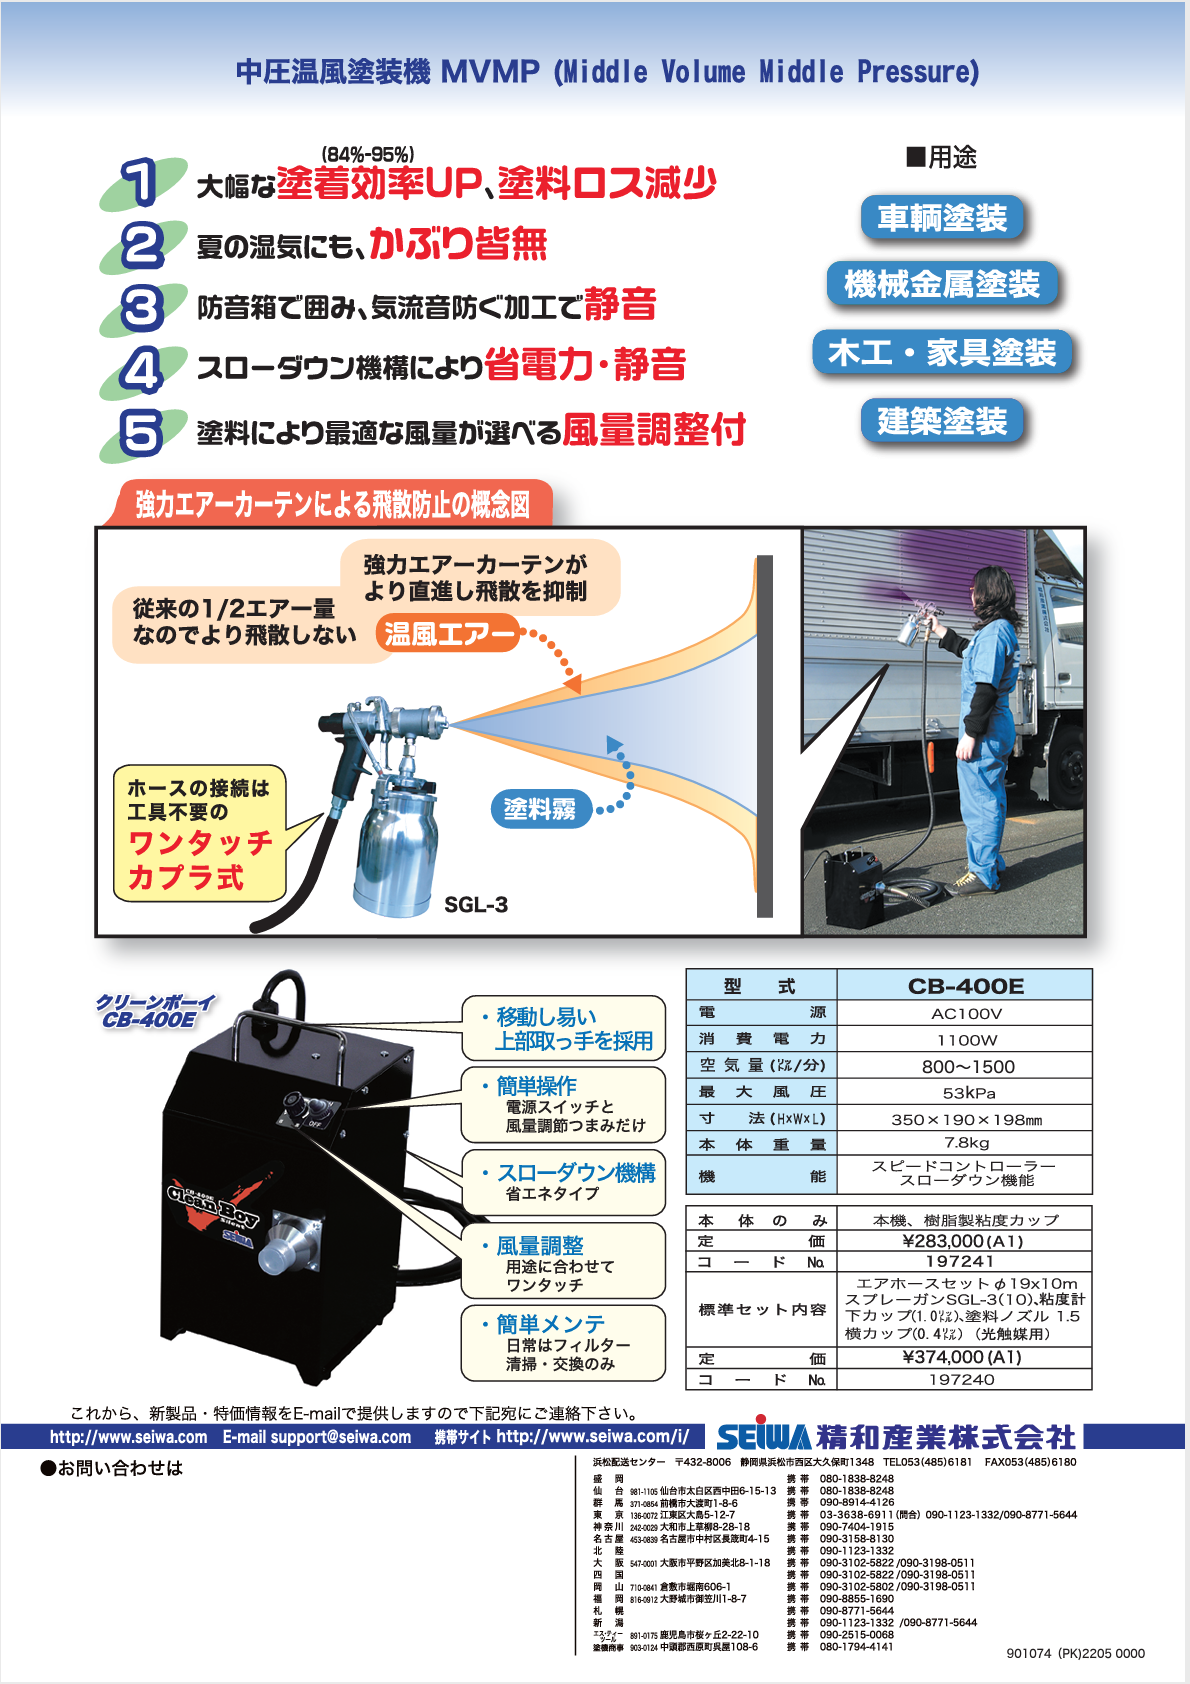 ☆品☆SEIWA 精和 CleanBoy クリーンボーイ 低圧高塗着塗装機 CB-400E エアタンク 100V 65923